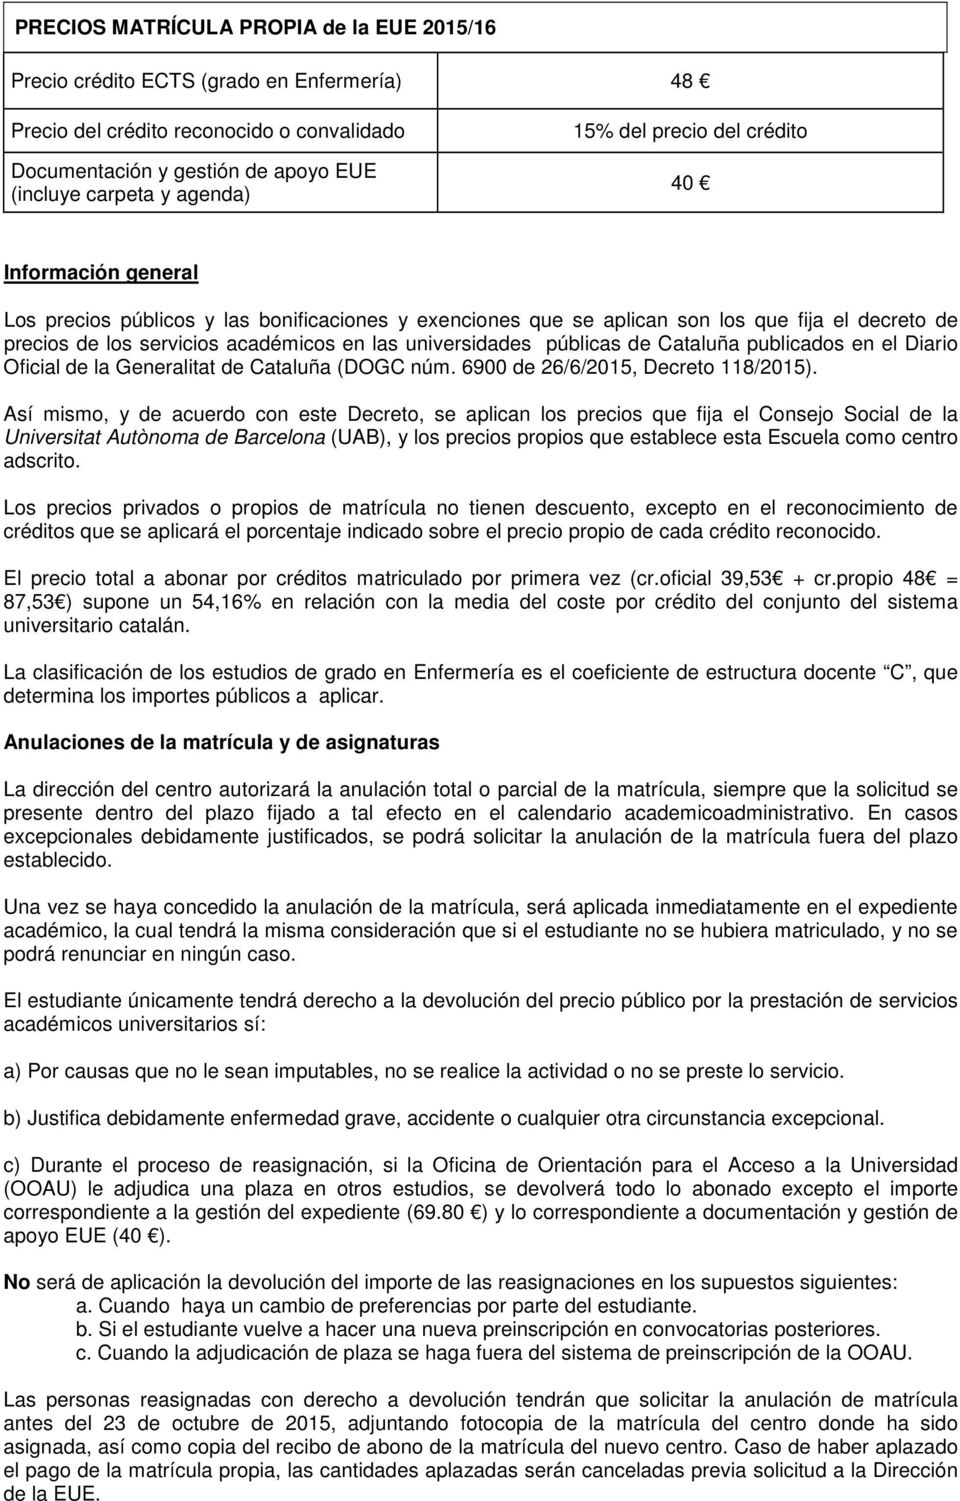 universidades públicas de Cataluña publicados en el Diario Oficial de la Generalitat de Cataluña (DOGC núm. 6900 de 26/6/2015, Decreto 118/2015).